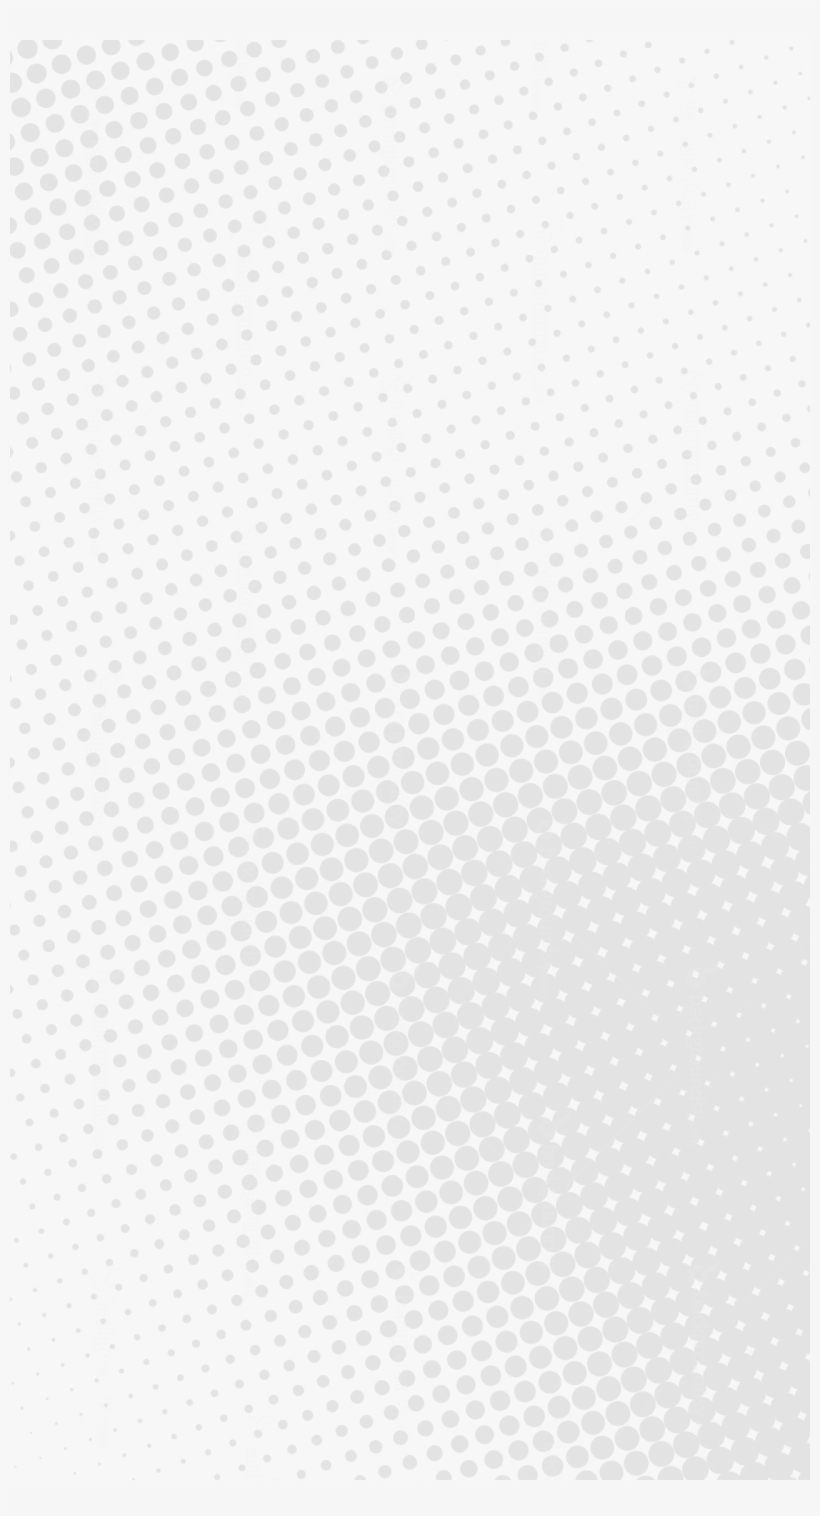 Dots Wave Background - Background Dot Wave Png, transparent png #2608862